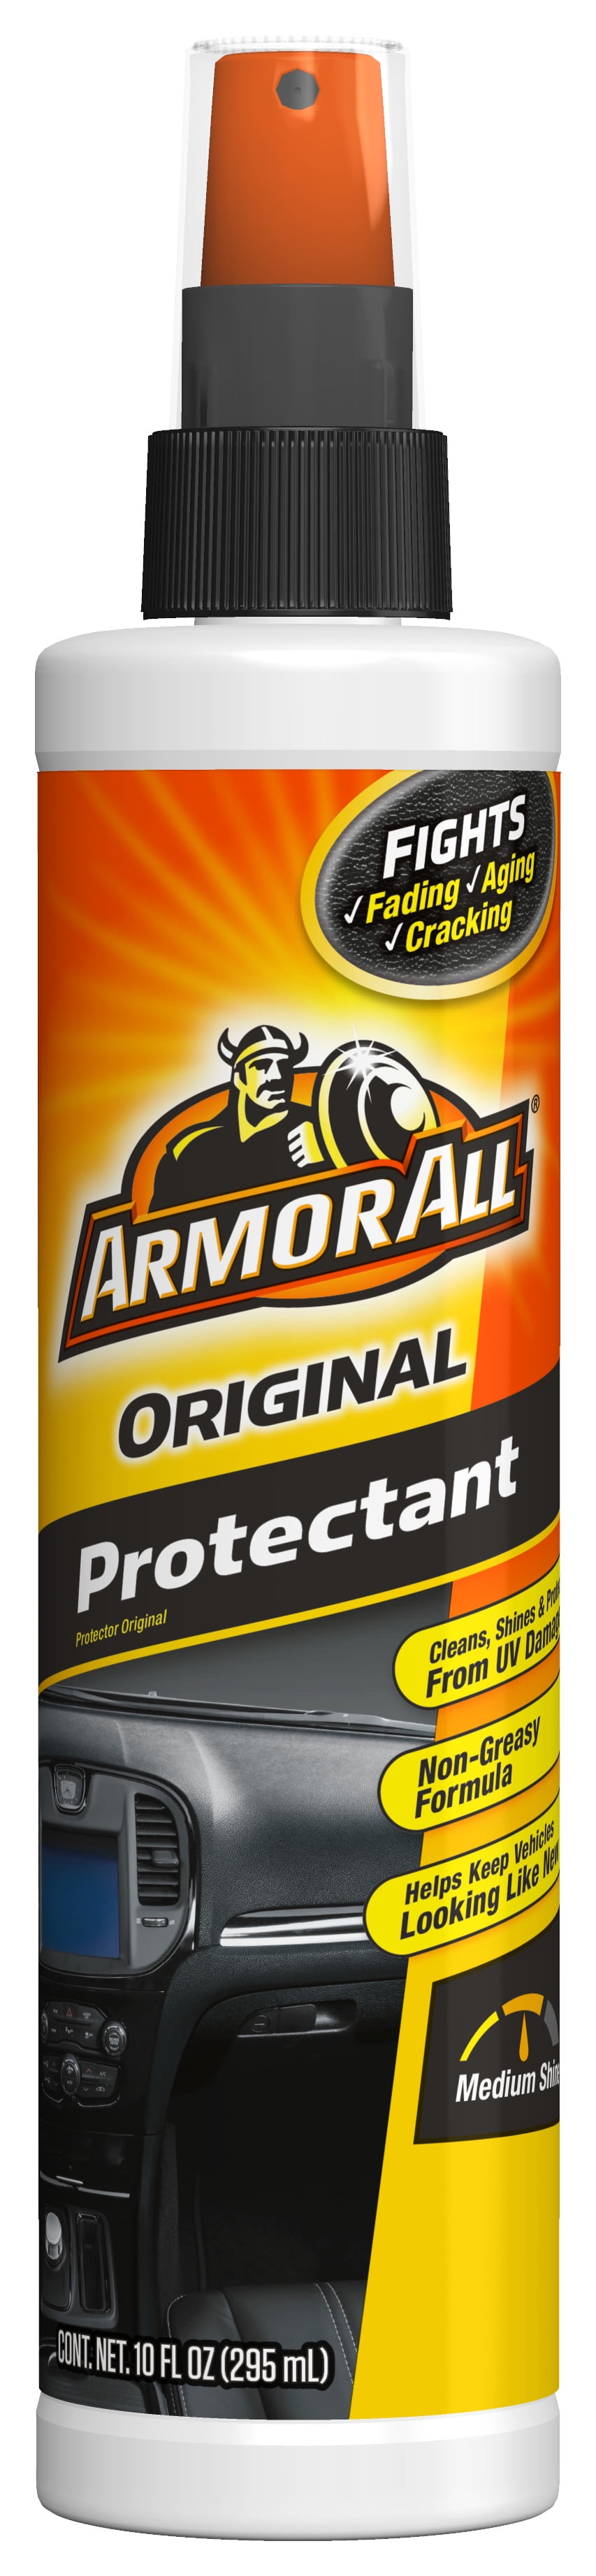 Armor All 32oz Original Protectant : Target